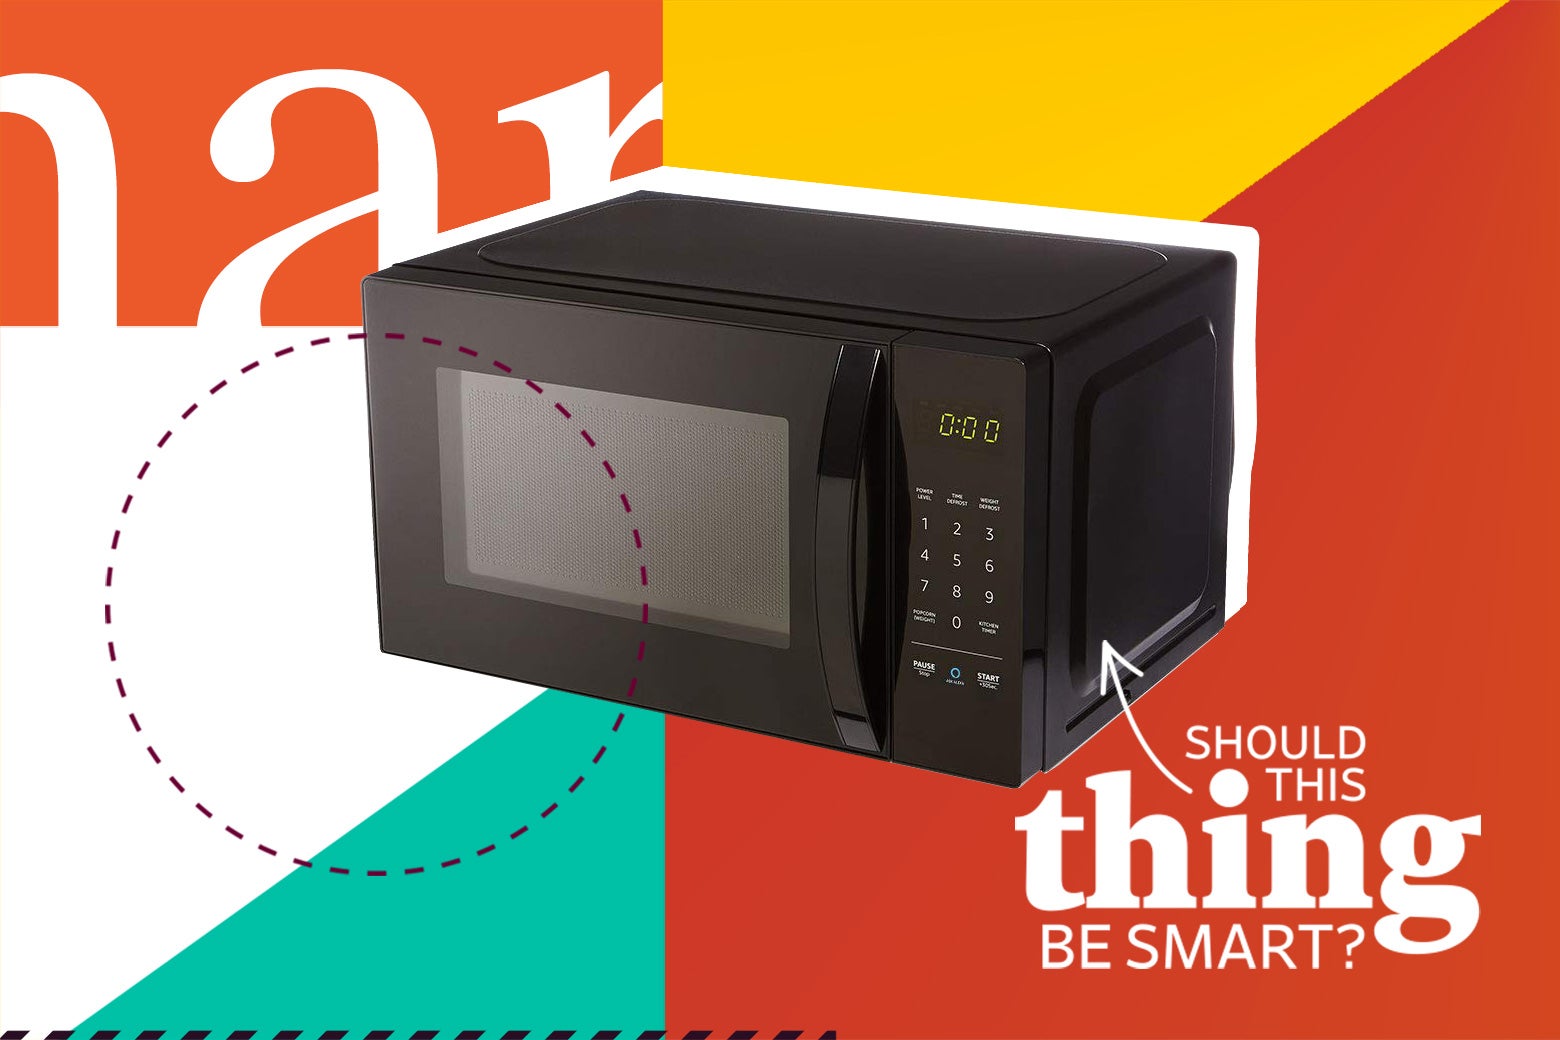 An AmazonBasics Microwave.